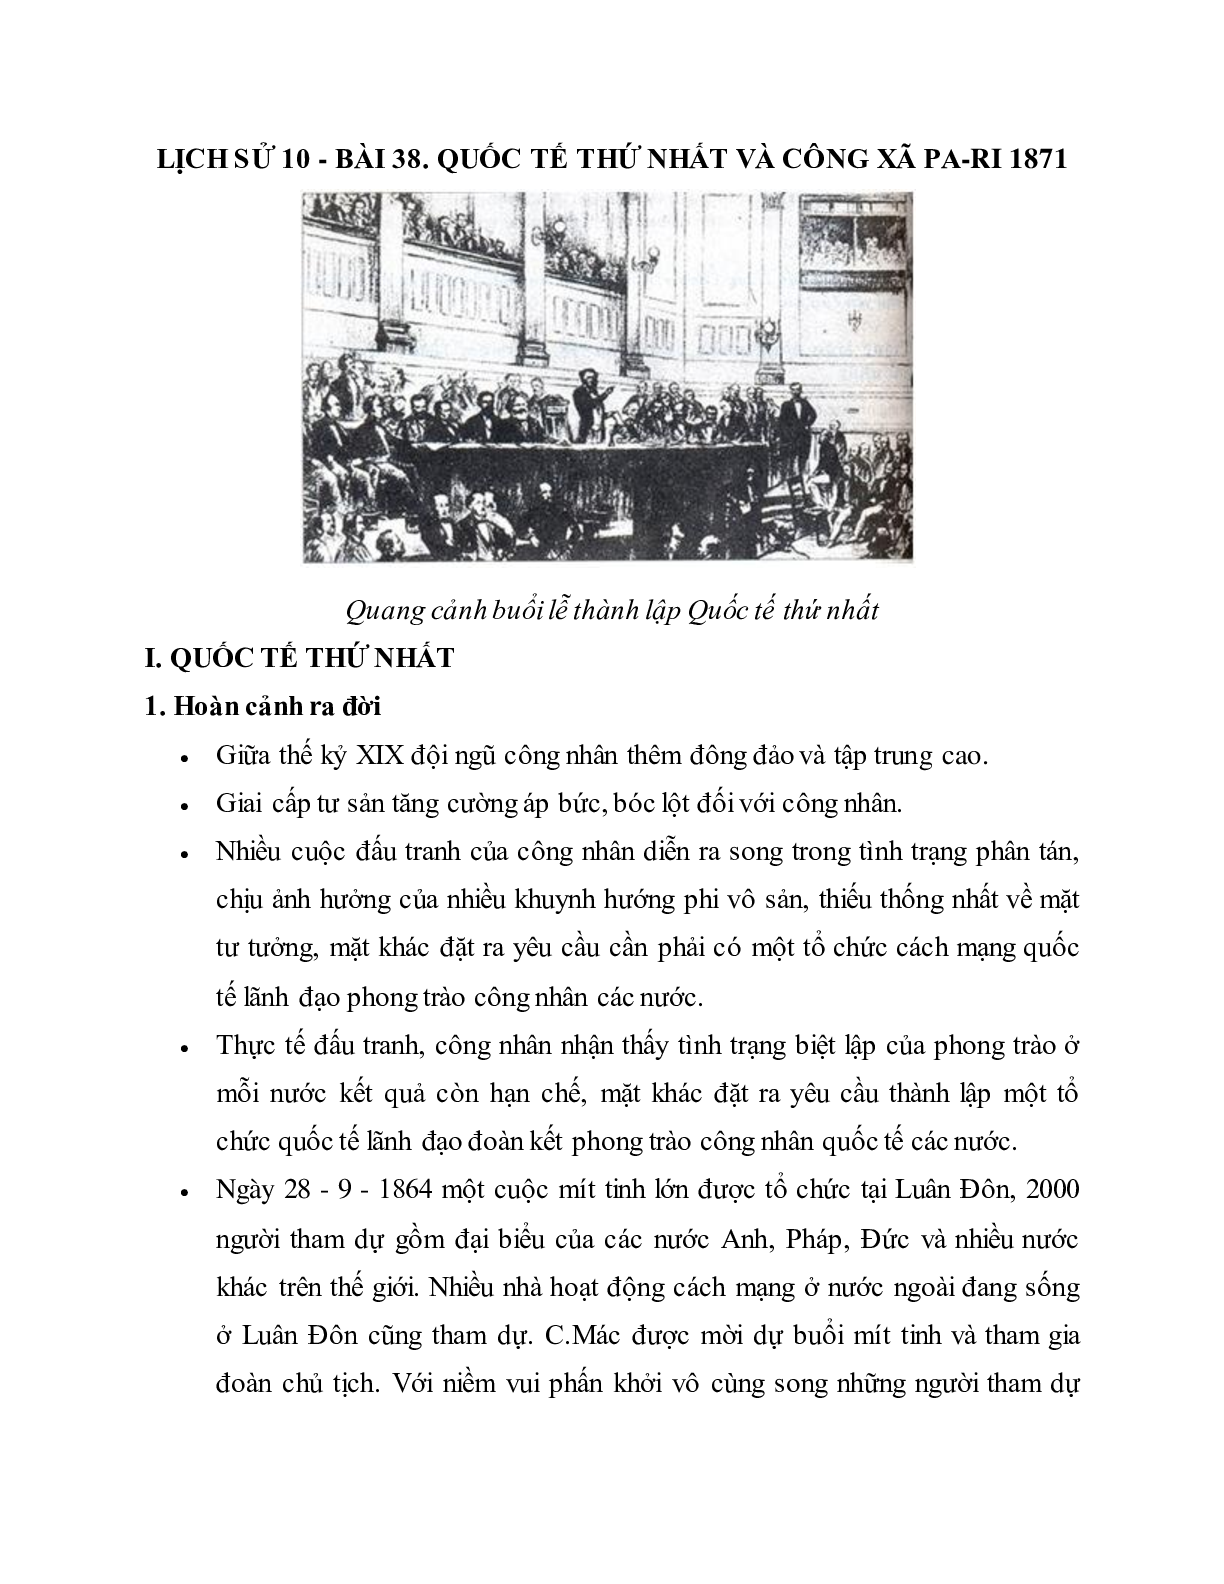 Lý thuyết Lịch sử 10: Bài 38: Quốc tế thứ nhất và công xã Pa-ri 1871 mới nhất (trang 1)